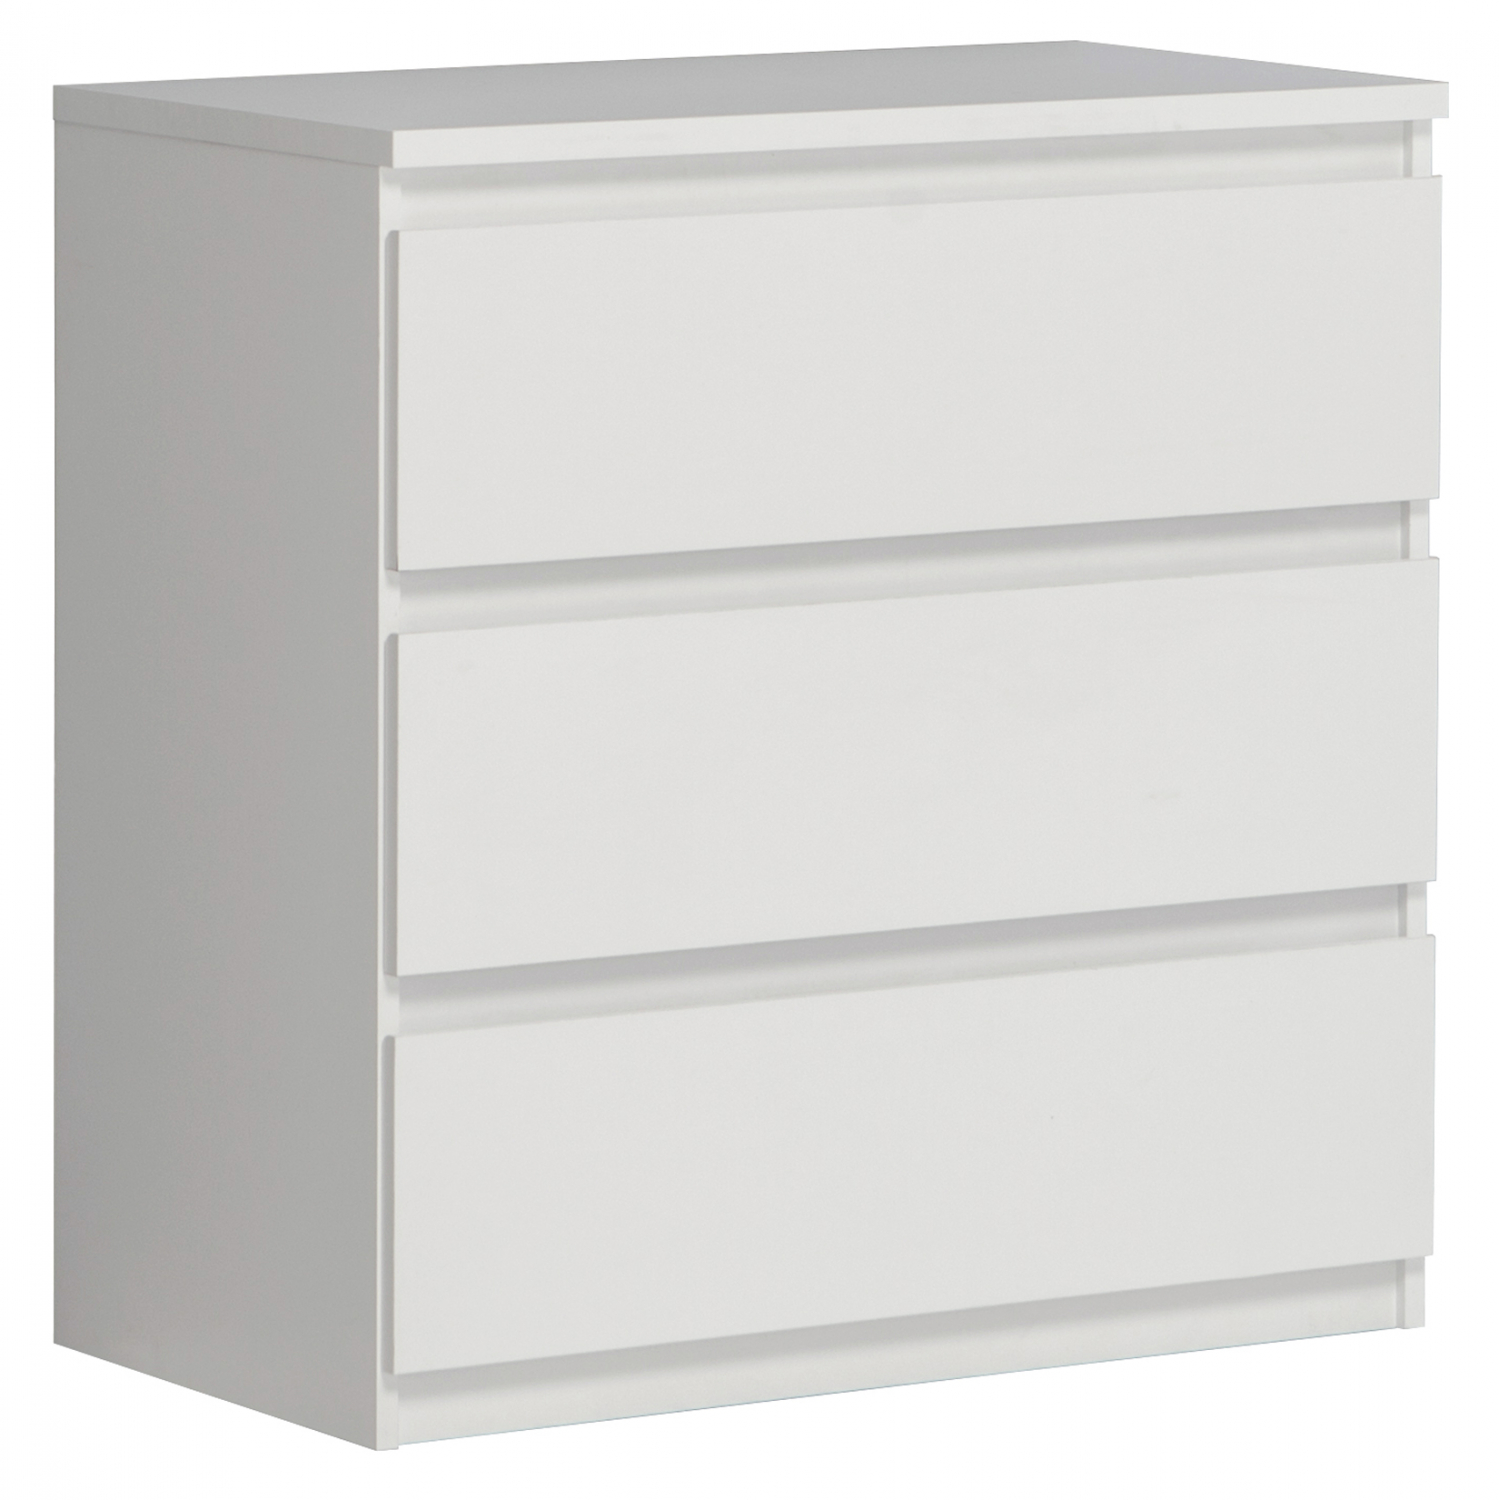 Συρταριερα “BRANCO” με 3 συρτάρια σε λευκό χρώμα 77,2×42,2×79,9